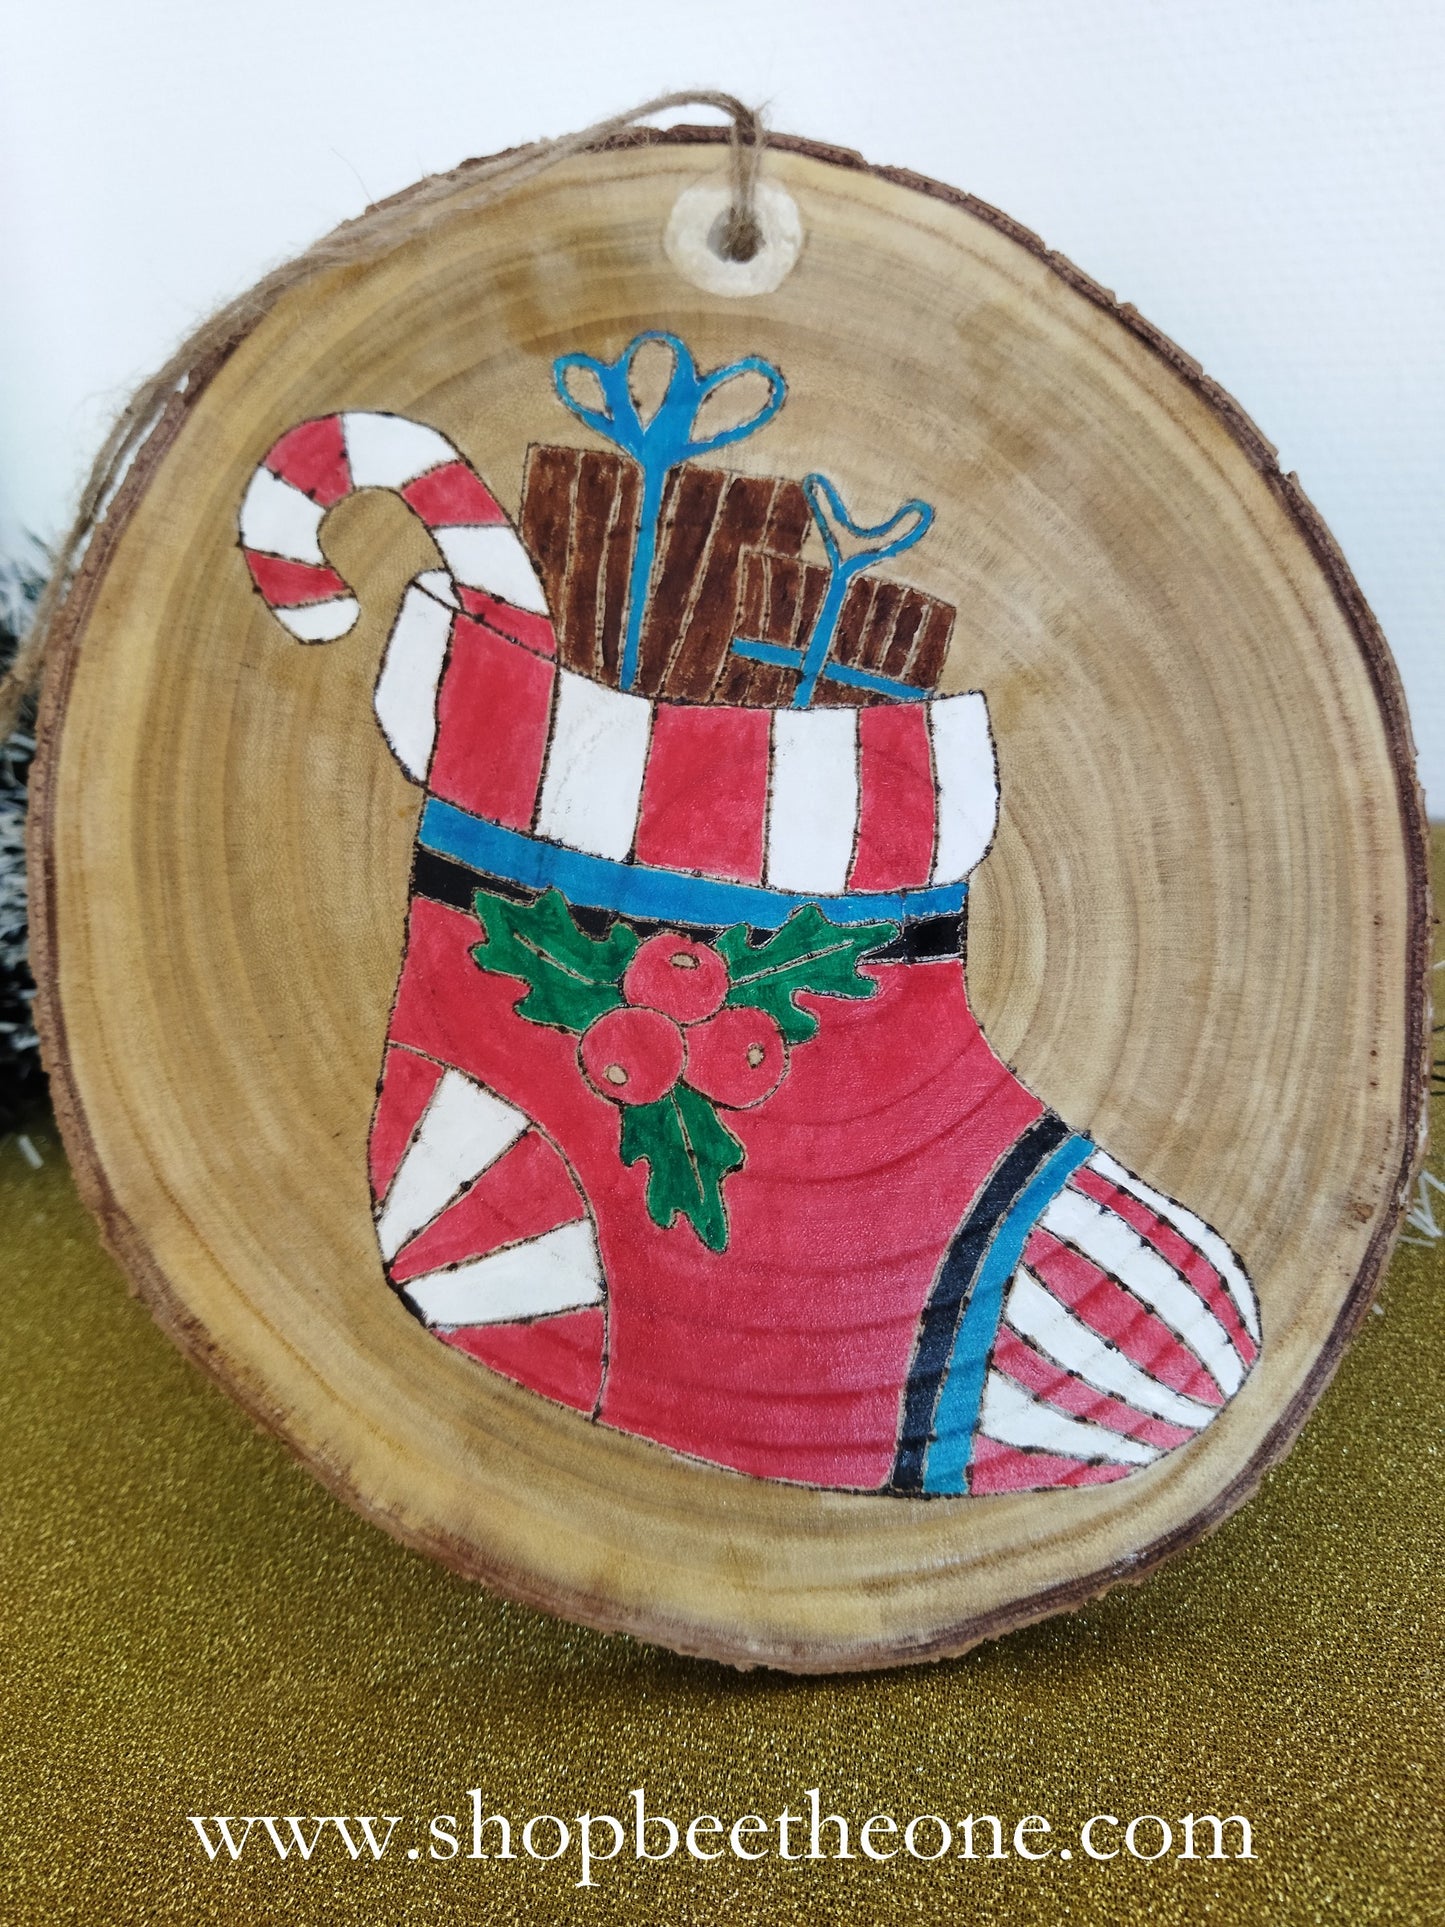 Grands rondins de bois décorés - botte de Noël ou pingouin - à suspendre ou poser